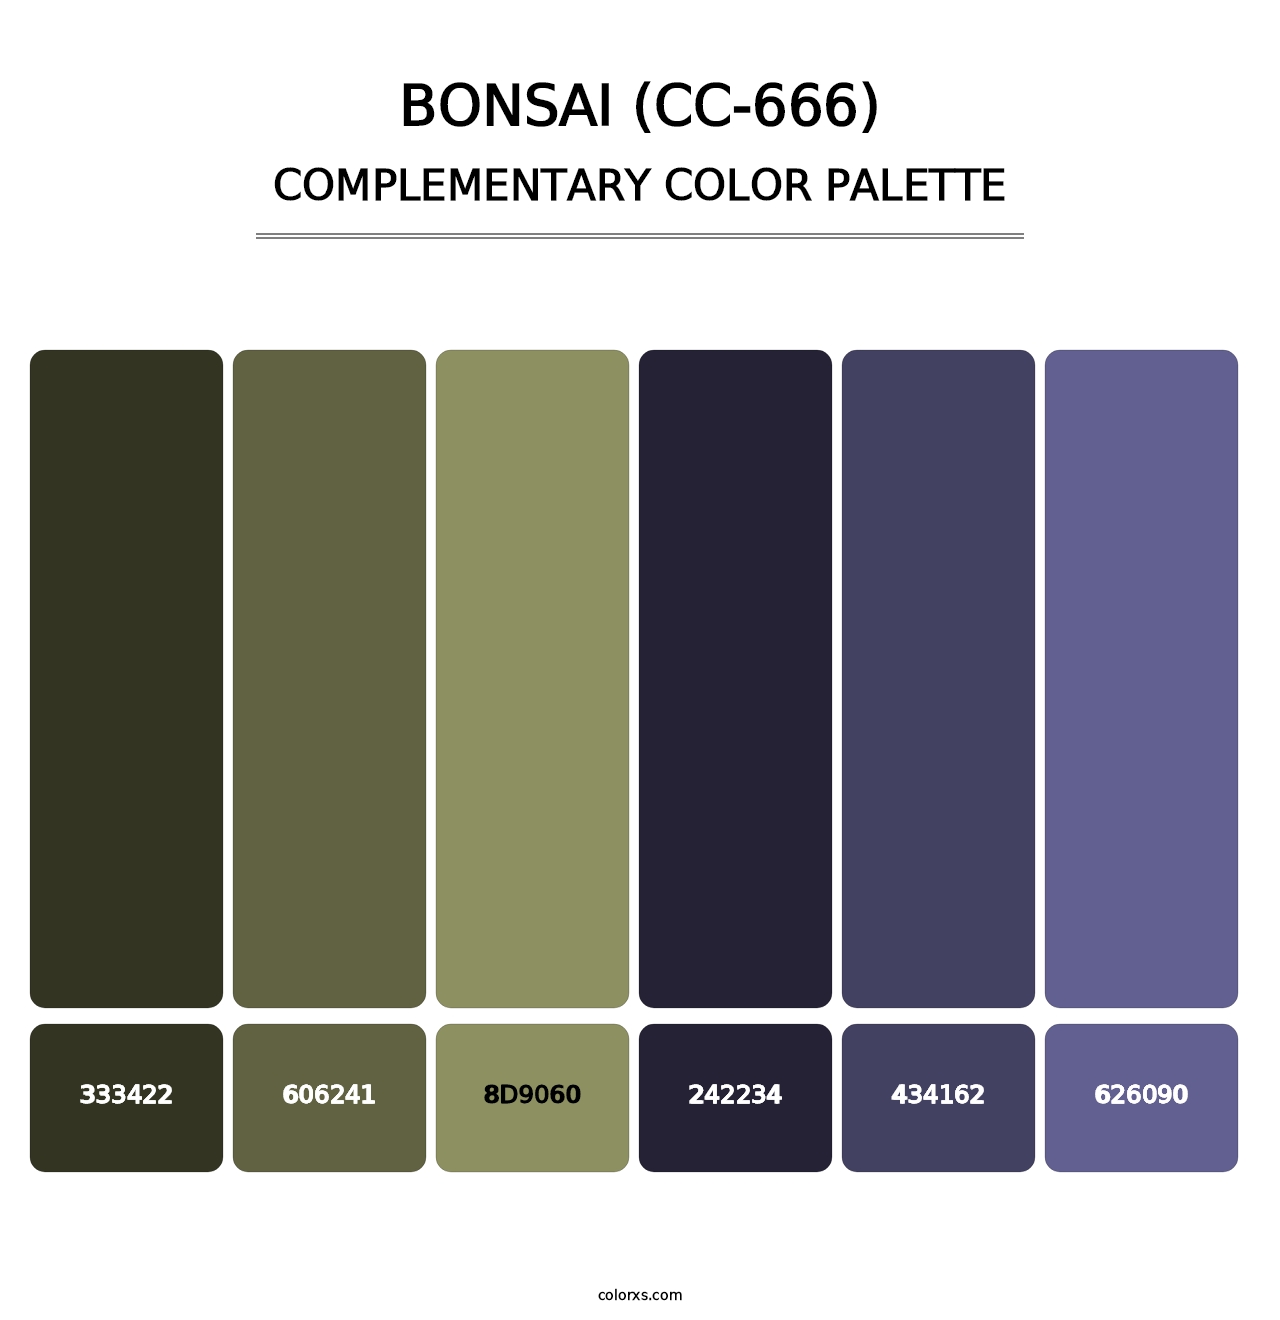 Bonsai (CC-666) - Complementary Color Palette